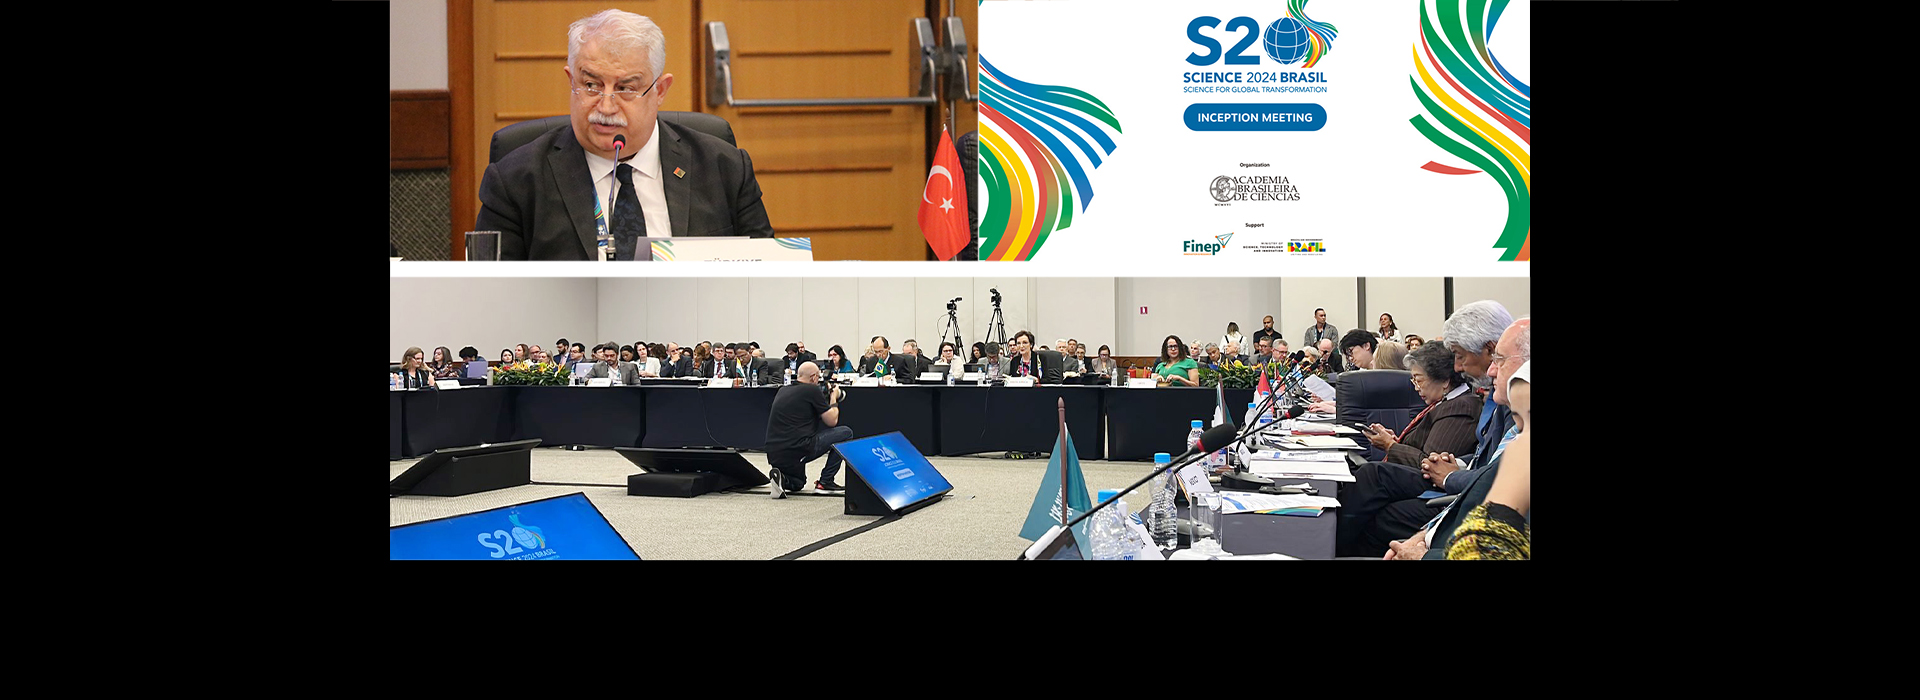 Başkan Şeker ‘S20-Küresel Dönüşüm için Bilim’ Toplantısına Katıldı